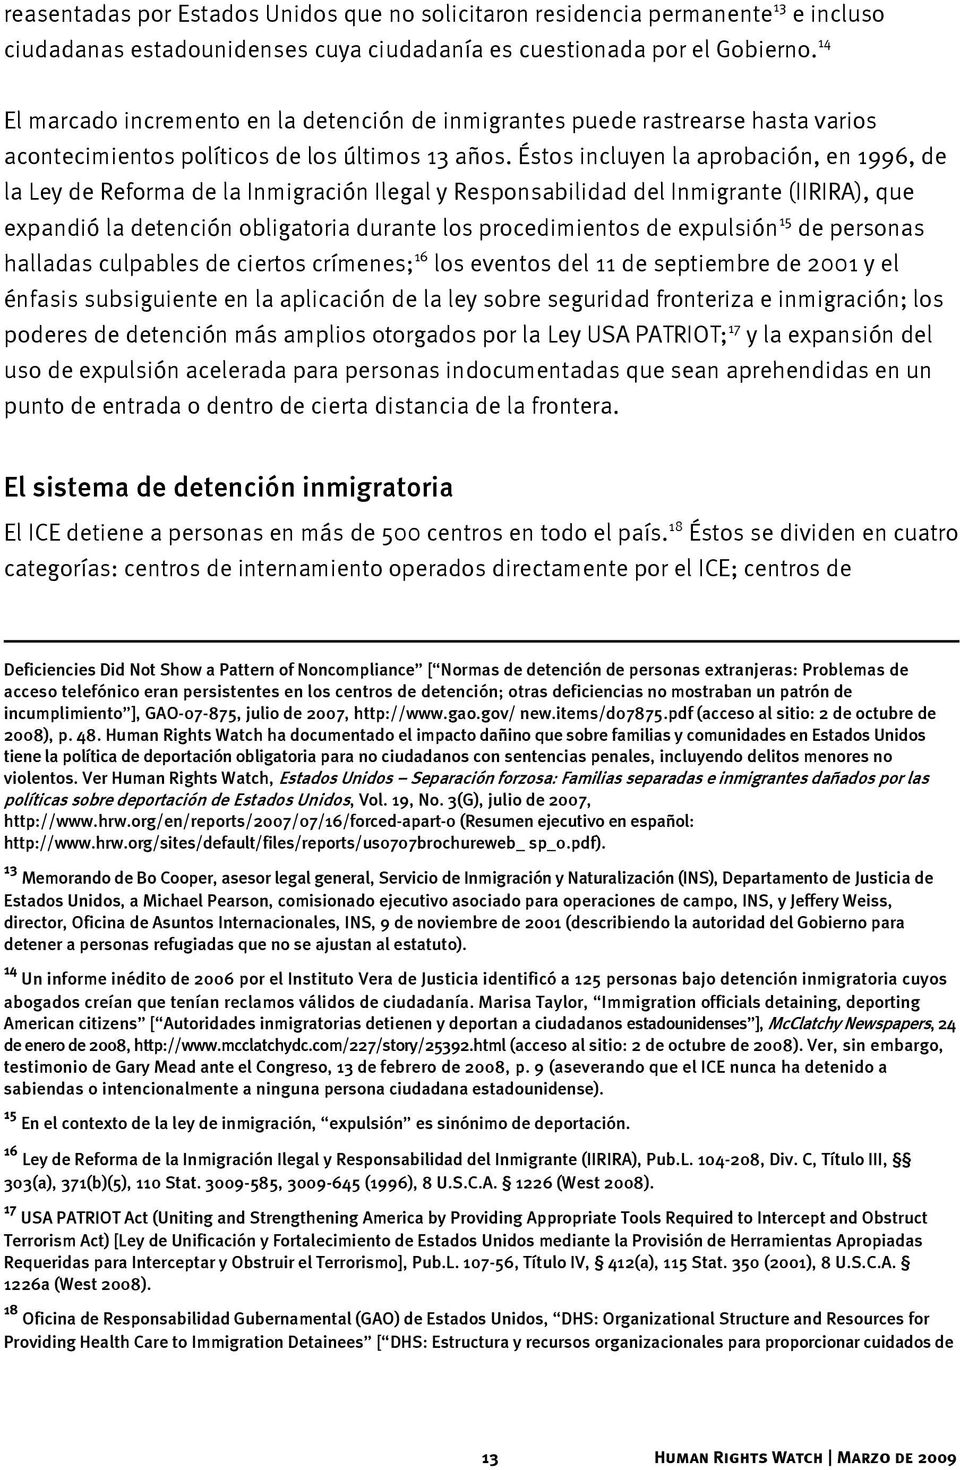 Éstos incluyen la aprobación, en 1996, de la Ley de Reforma de la Inmigración Ilegal y Responsabilidad del Inmigrante (IIRIRA), que expandió la detención obligatoria durante los procedimientos de